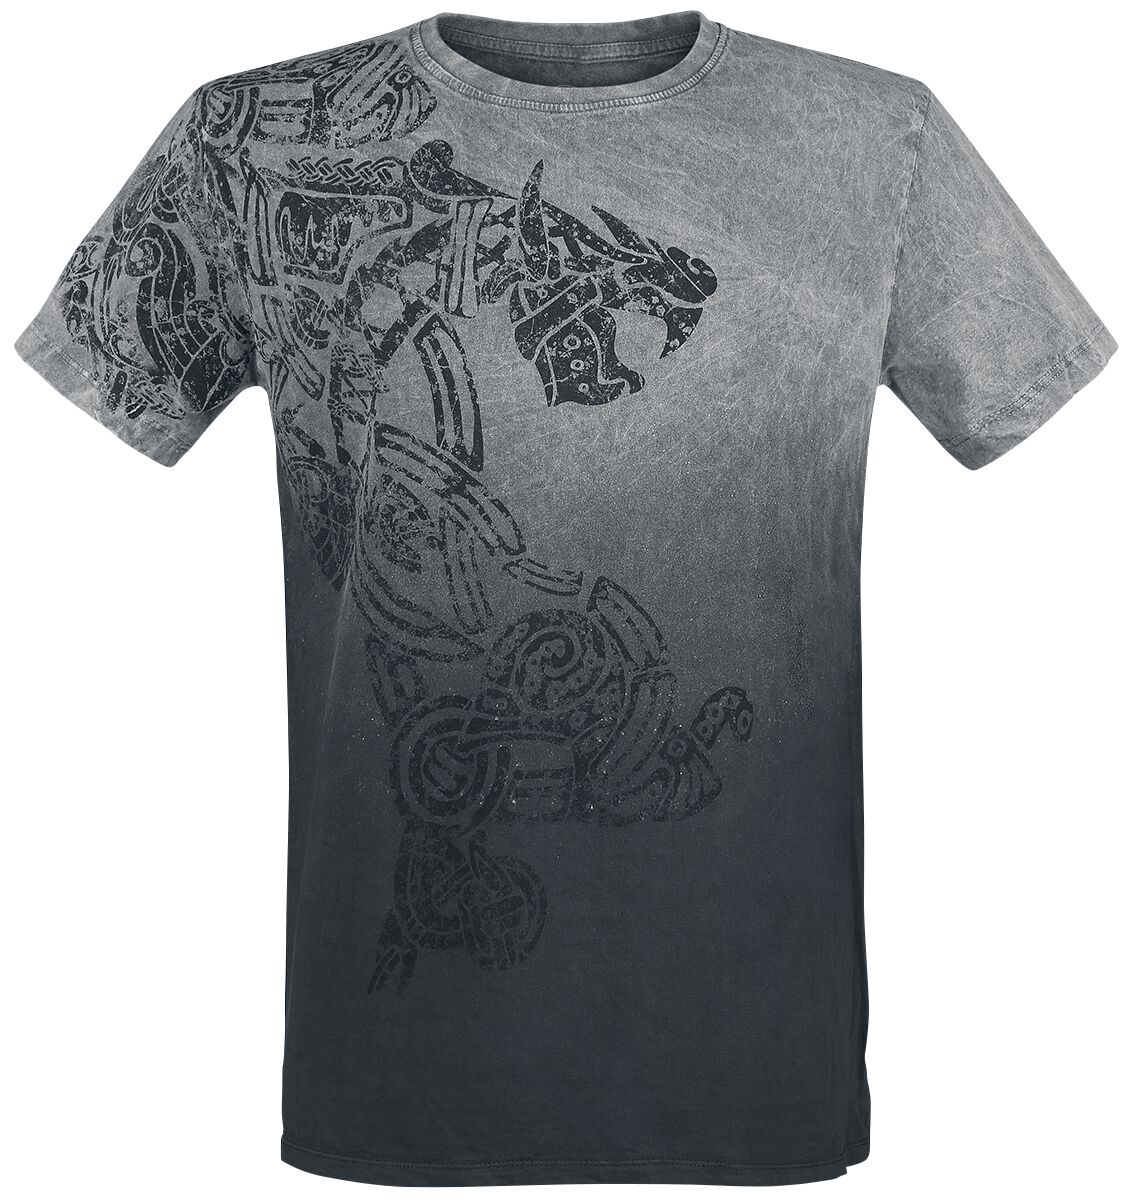 Outer Vision T-Shirt - Dragon Tattoo - S bis 4XL - für Männer - Größe XXL - grau